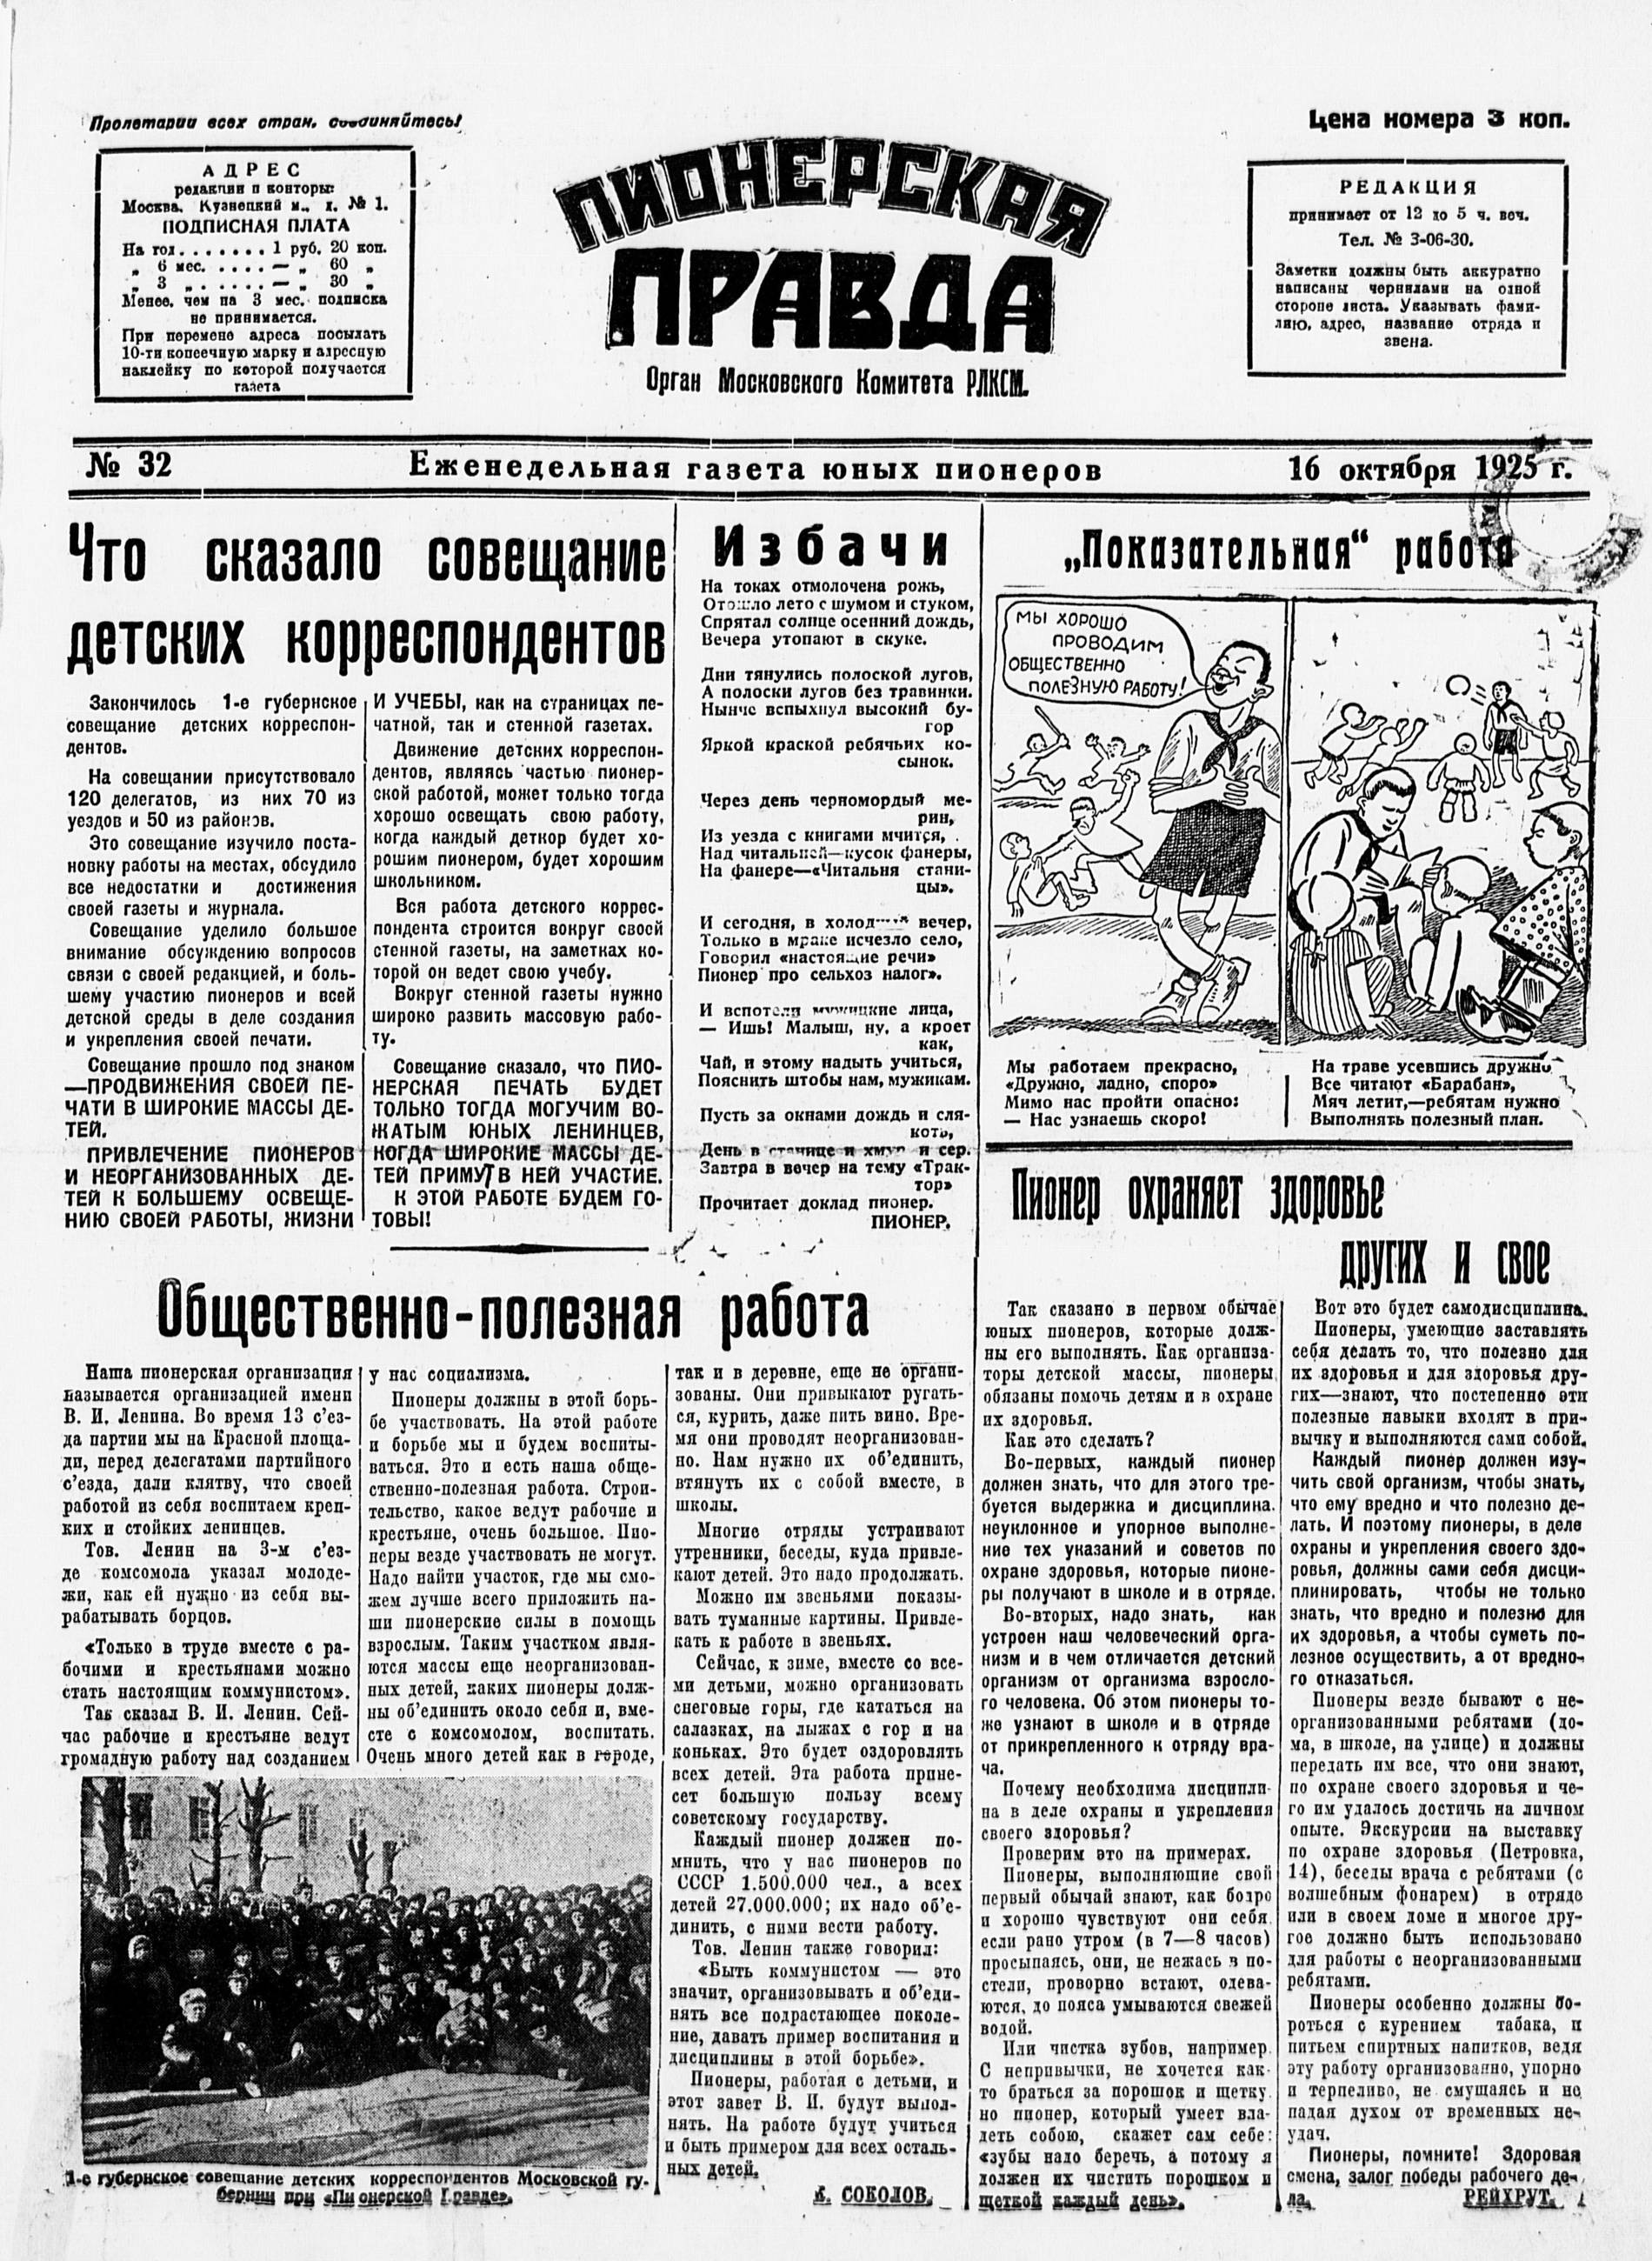 Пионерская правда. 1925. № 32: еженедельная газета юных пионеров - 1925